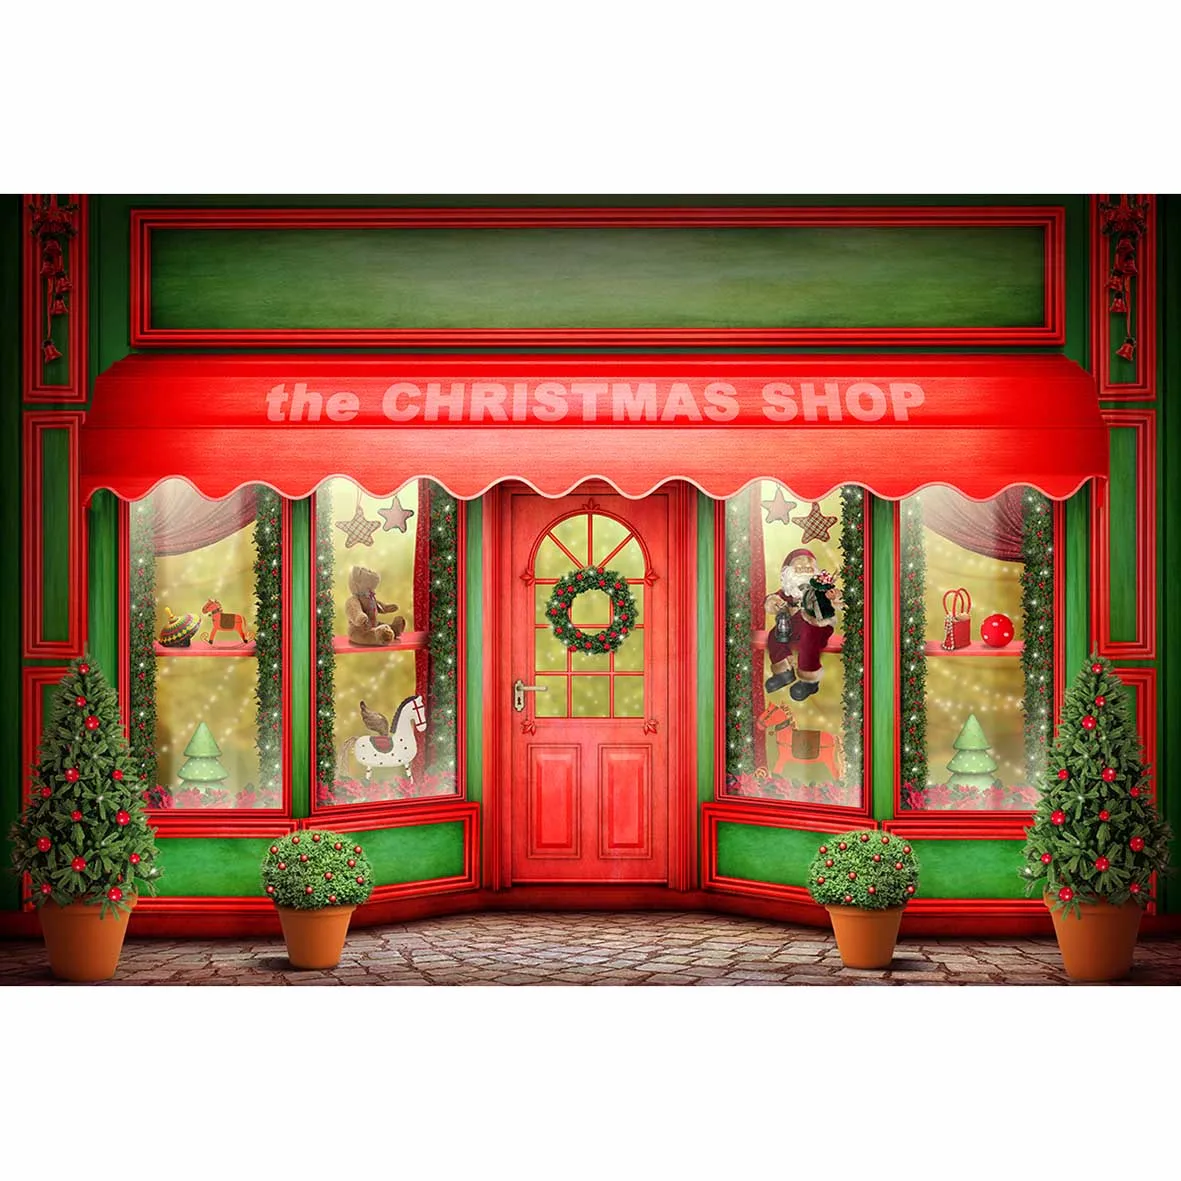 Allenjoy фон для фотосъемки красный зеленый фон для фотосъемки с изображением рождественского окна куклы в горшках студийный фон для фотосъемки